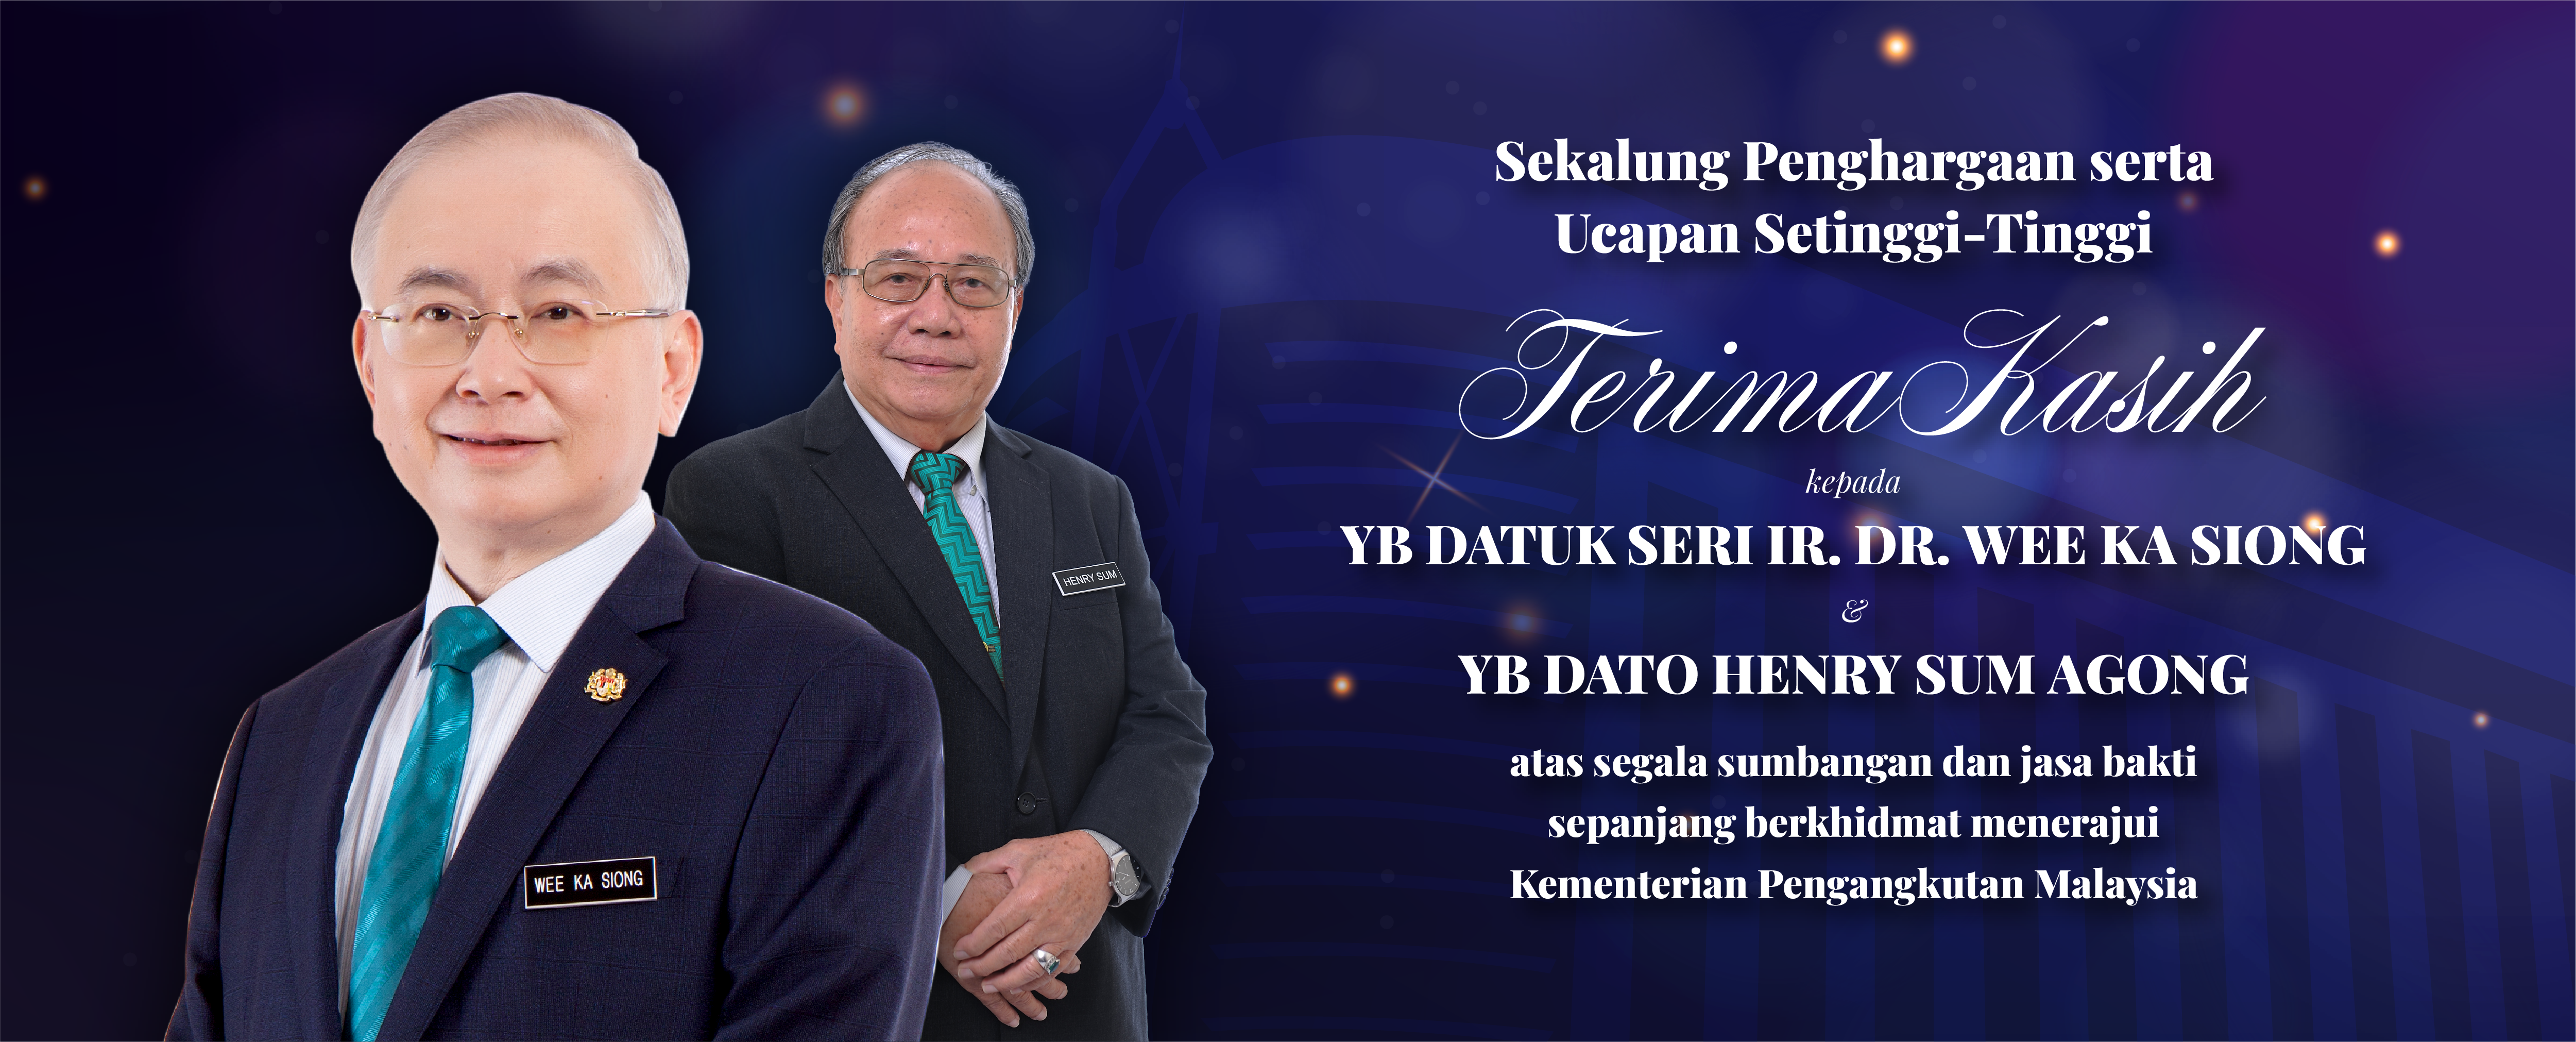 Thank You YB Datuk Seri Ir. Dr. Wee Ka Siong and YB Dato Henry Sum Agong